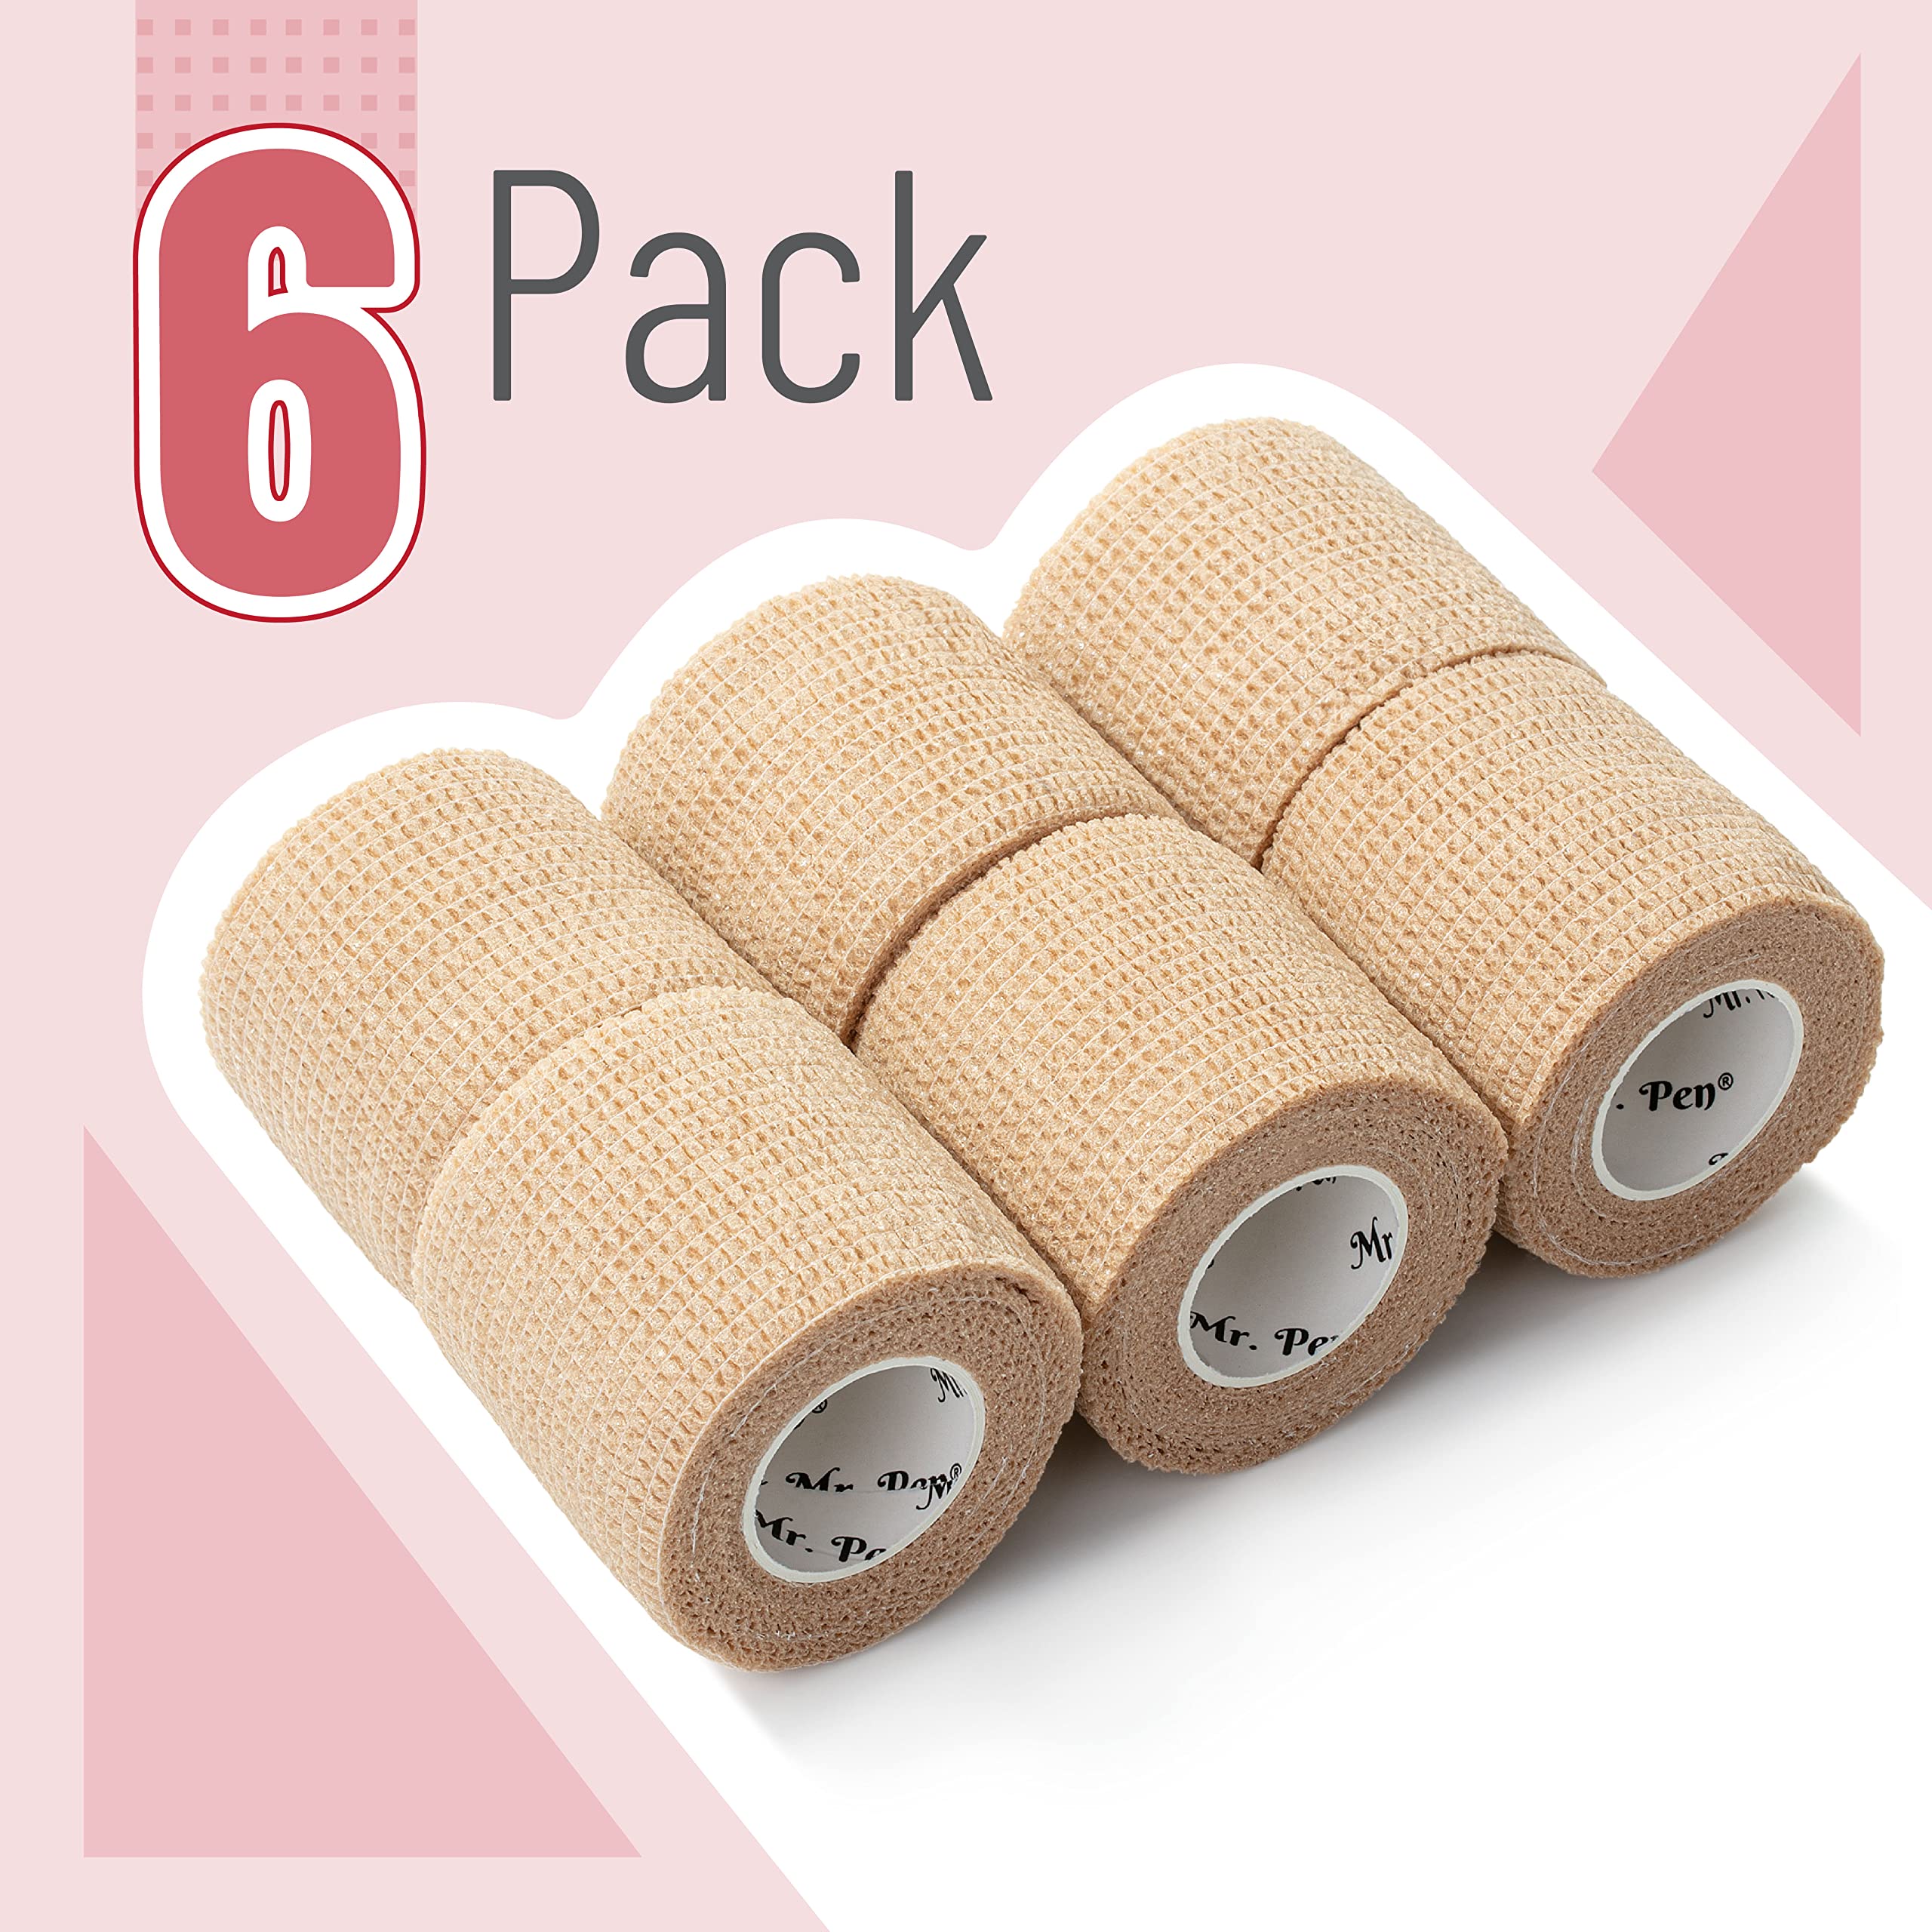 Mr. Pen- Self Adhesive Bandage Wrap, 6 Pack, Skin Colored, 2“ x 5 Yards, Adhesive Bandages, Cohesive Bandage, Medical Wrap, Elastic Bandage Wrap, Bandage Tape, Self Sticking Bandage Wrap